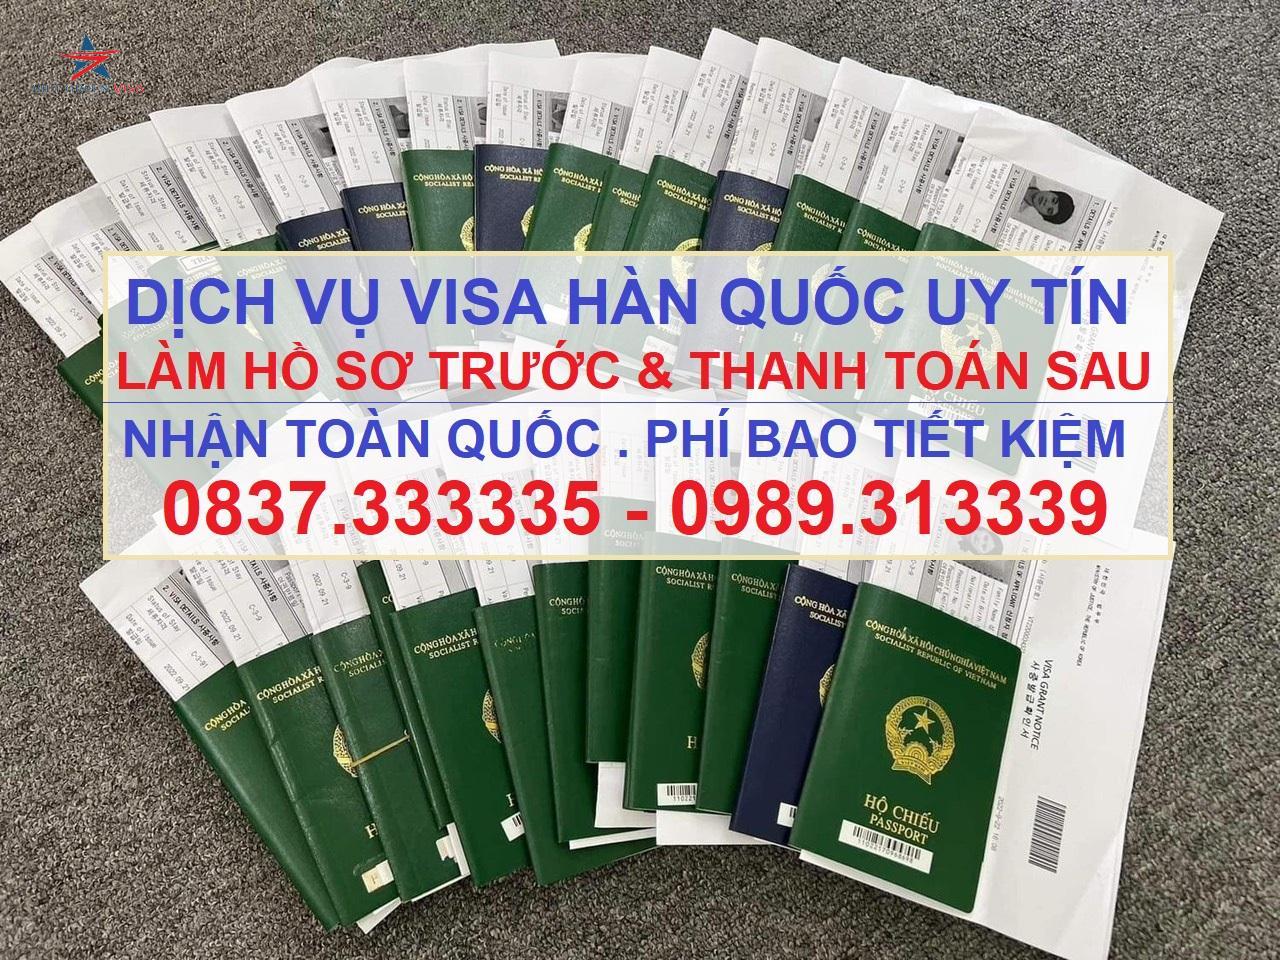 Dịch vụ visa Hàn Quốc tại Bình Thuận, xin visa Hàn Quốc tại Bình Thuận, Visa Hàn Quốc, Viet Green Visa, Du Lịch Xanh